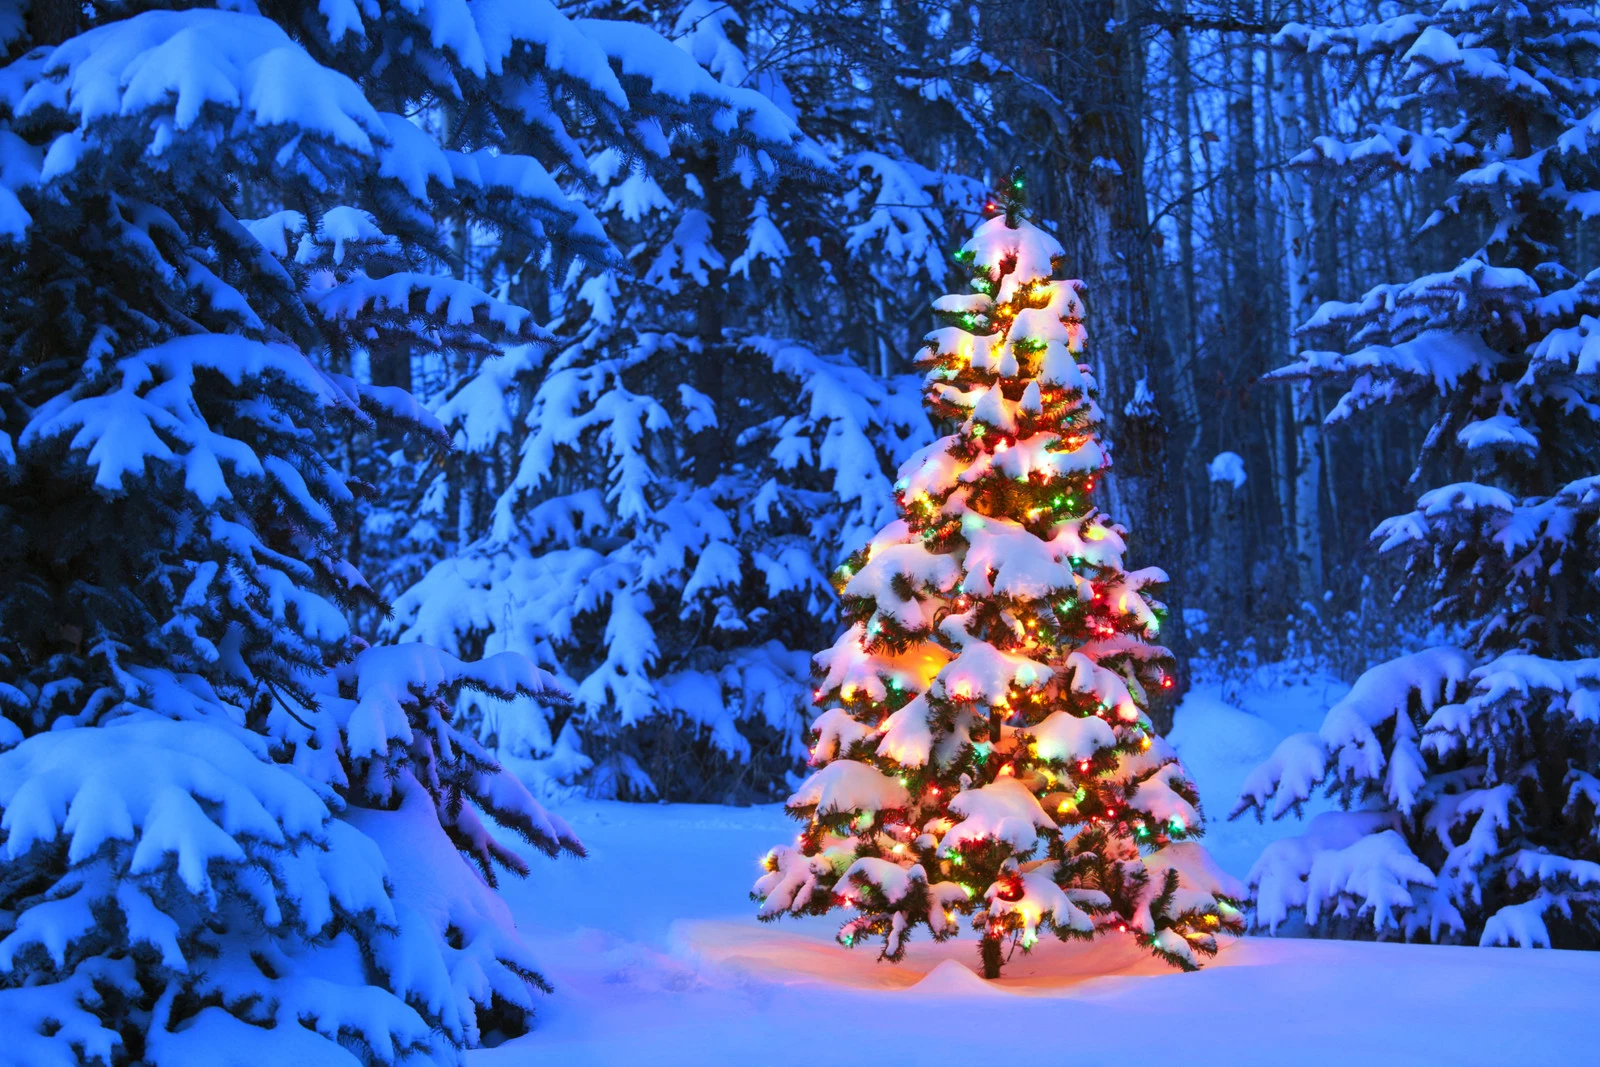 RS28656_christmas-tree-snow-thinkstock-scr.jpg